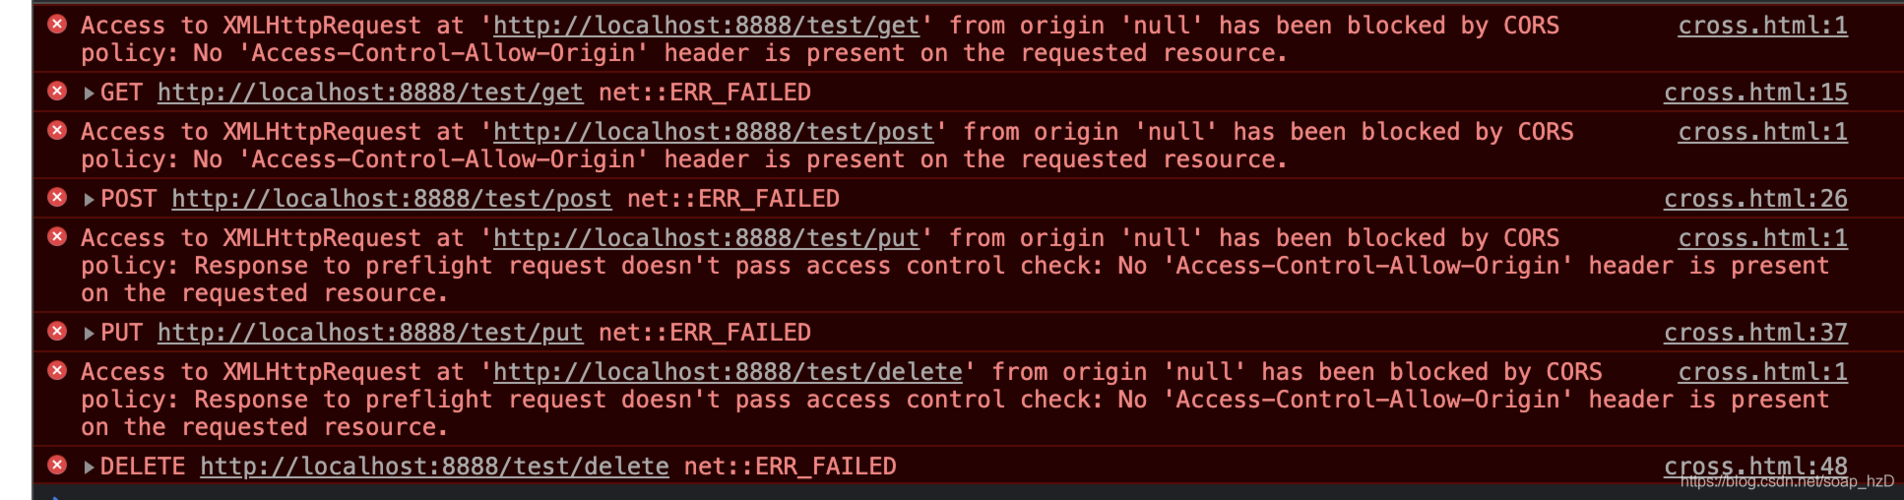 使用Apache Dubbo3.2.5，提供gRPC协议。 加上nginx代理之后，就报错，为什么？